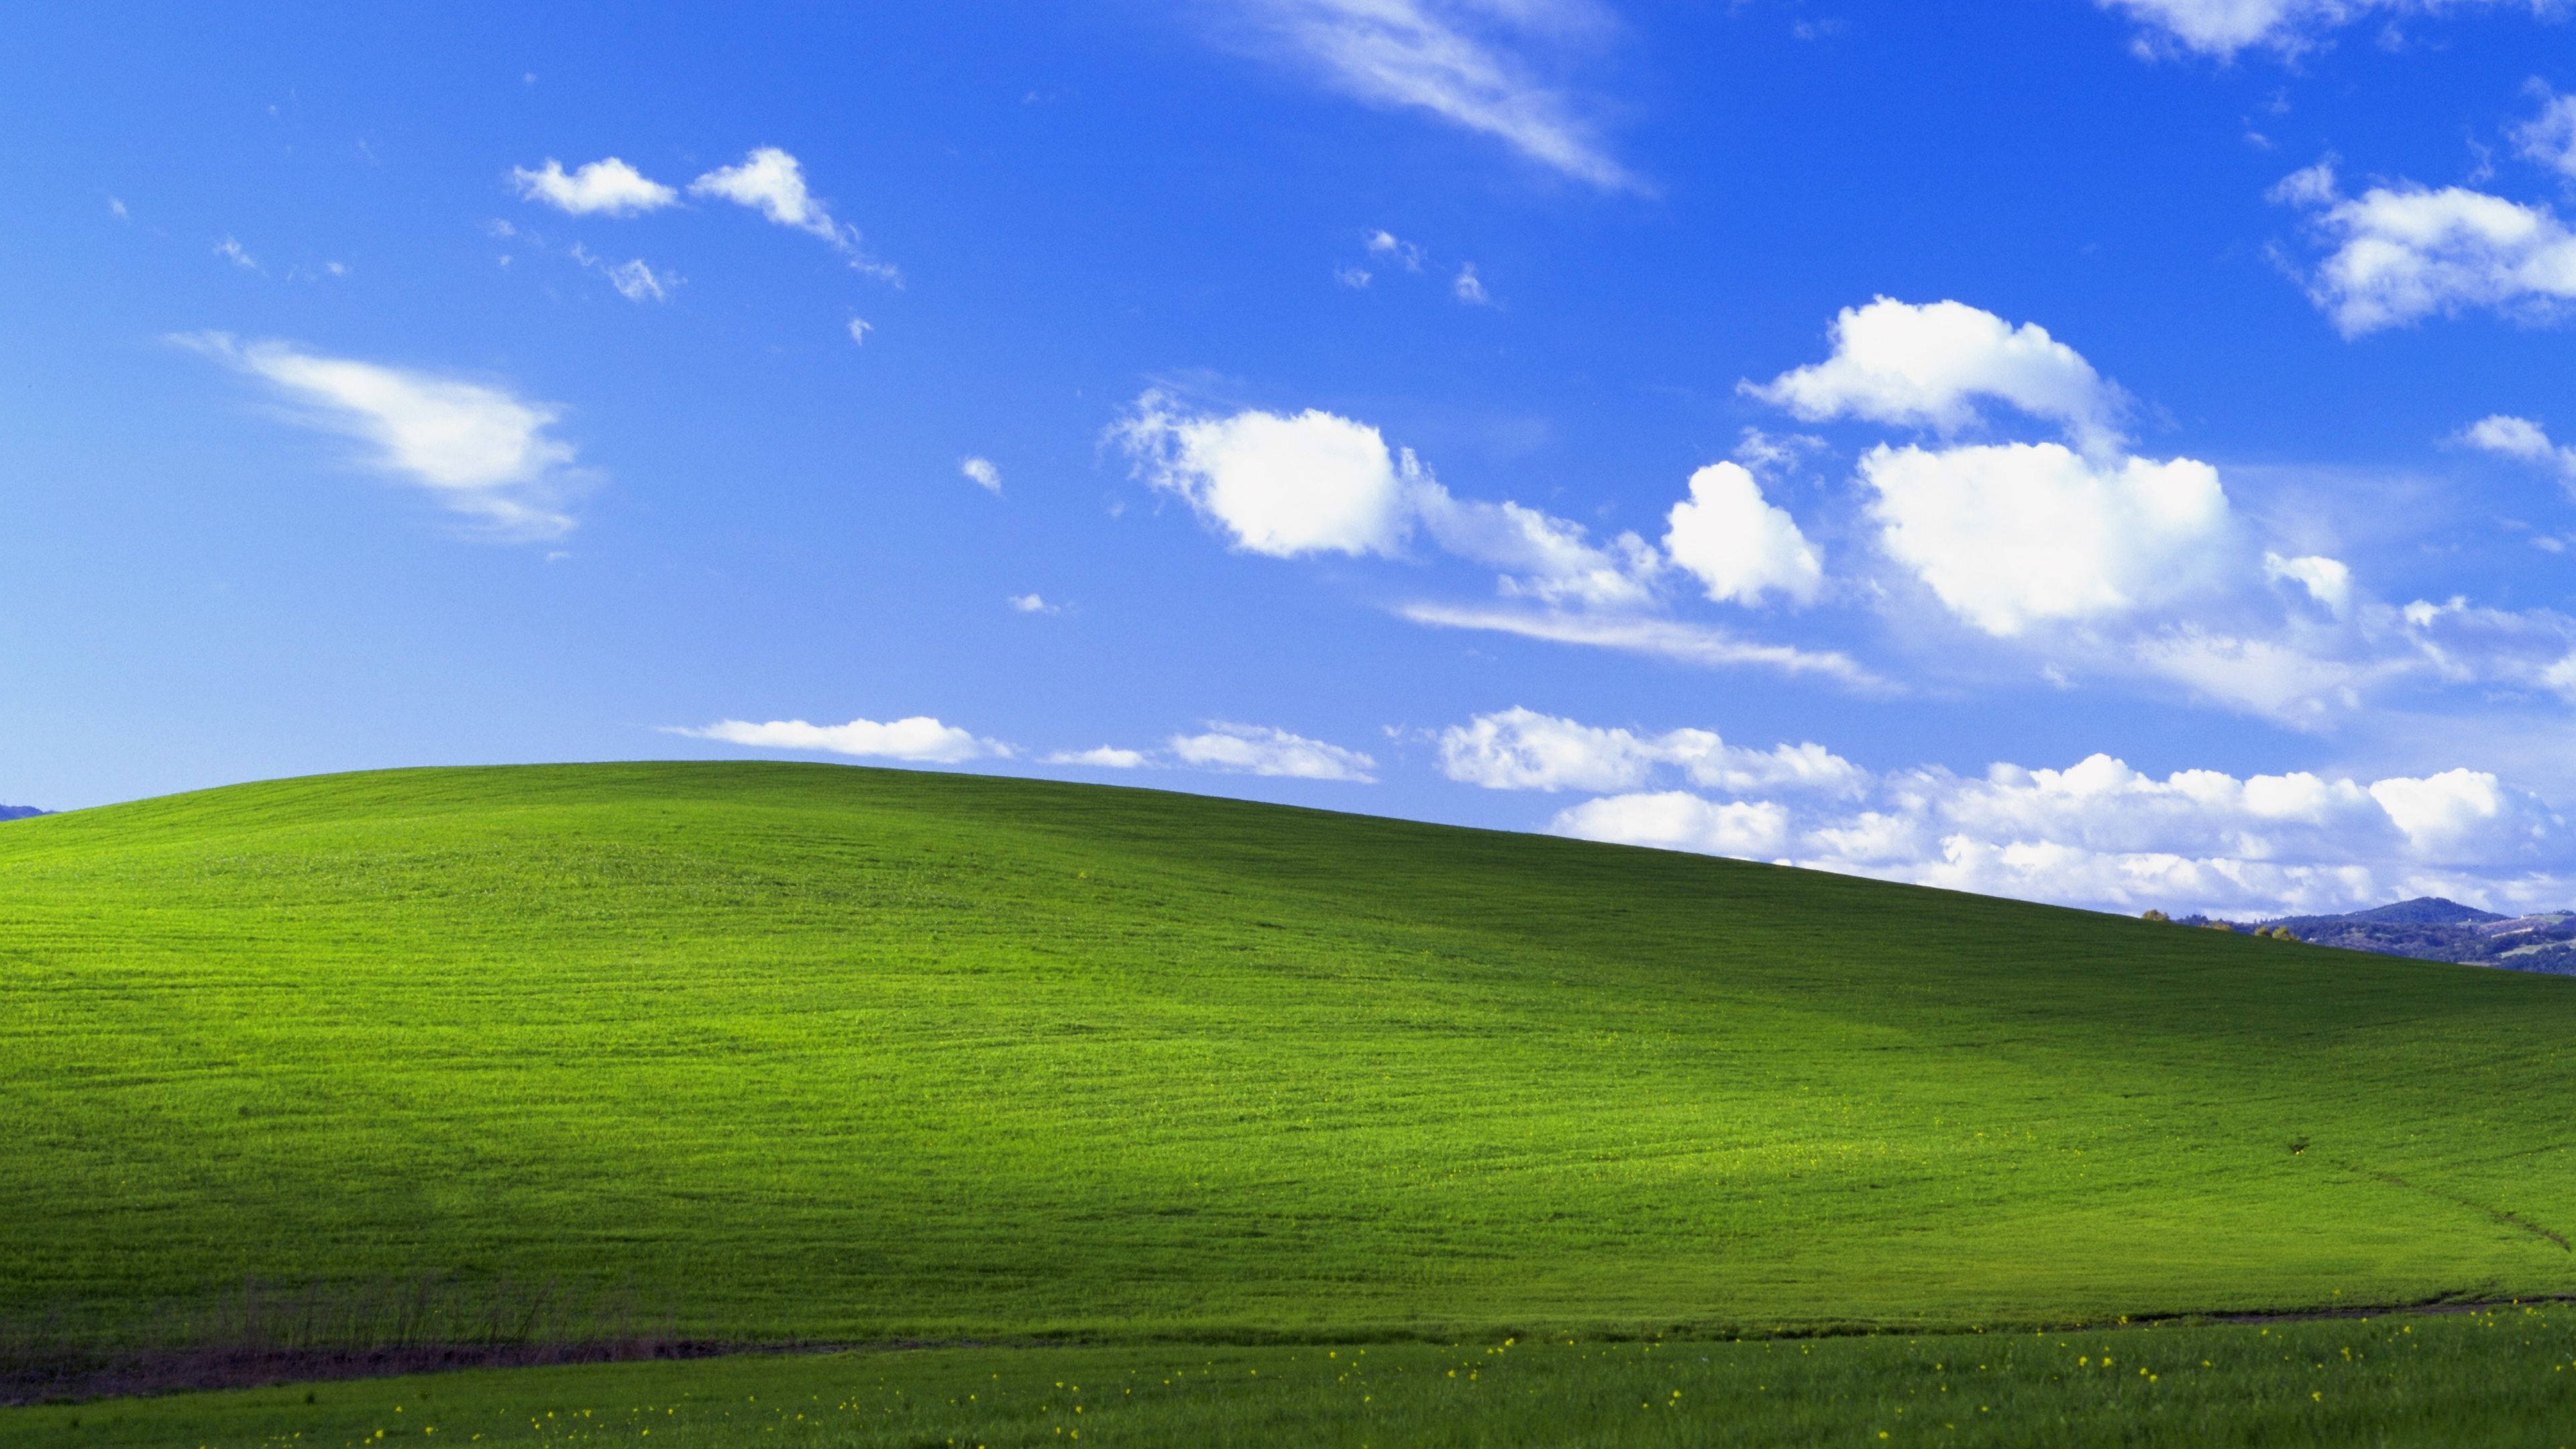 Windows XP đã làm nên lịch sử công nghệ với thiết kế Bliss của mình. Hơn mười năm trôi qua, nhưng vẫn có rất nhiều người vẫn mong muốn sở hữu nó. Với tin tức tốt là bạn có thể tải hình nền của Bliss dễ dàng và miễn phí. Nhanh tay tải về để trải nghiệm cảm giác hoài niệm của một thời.